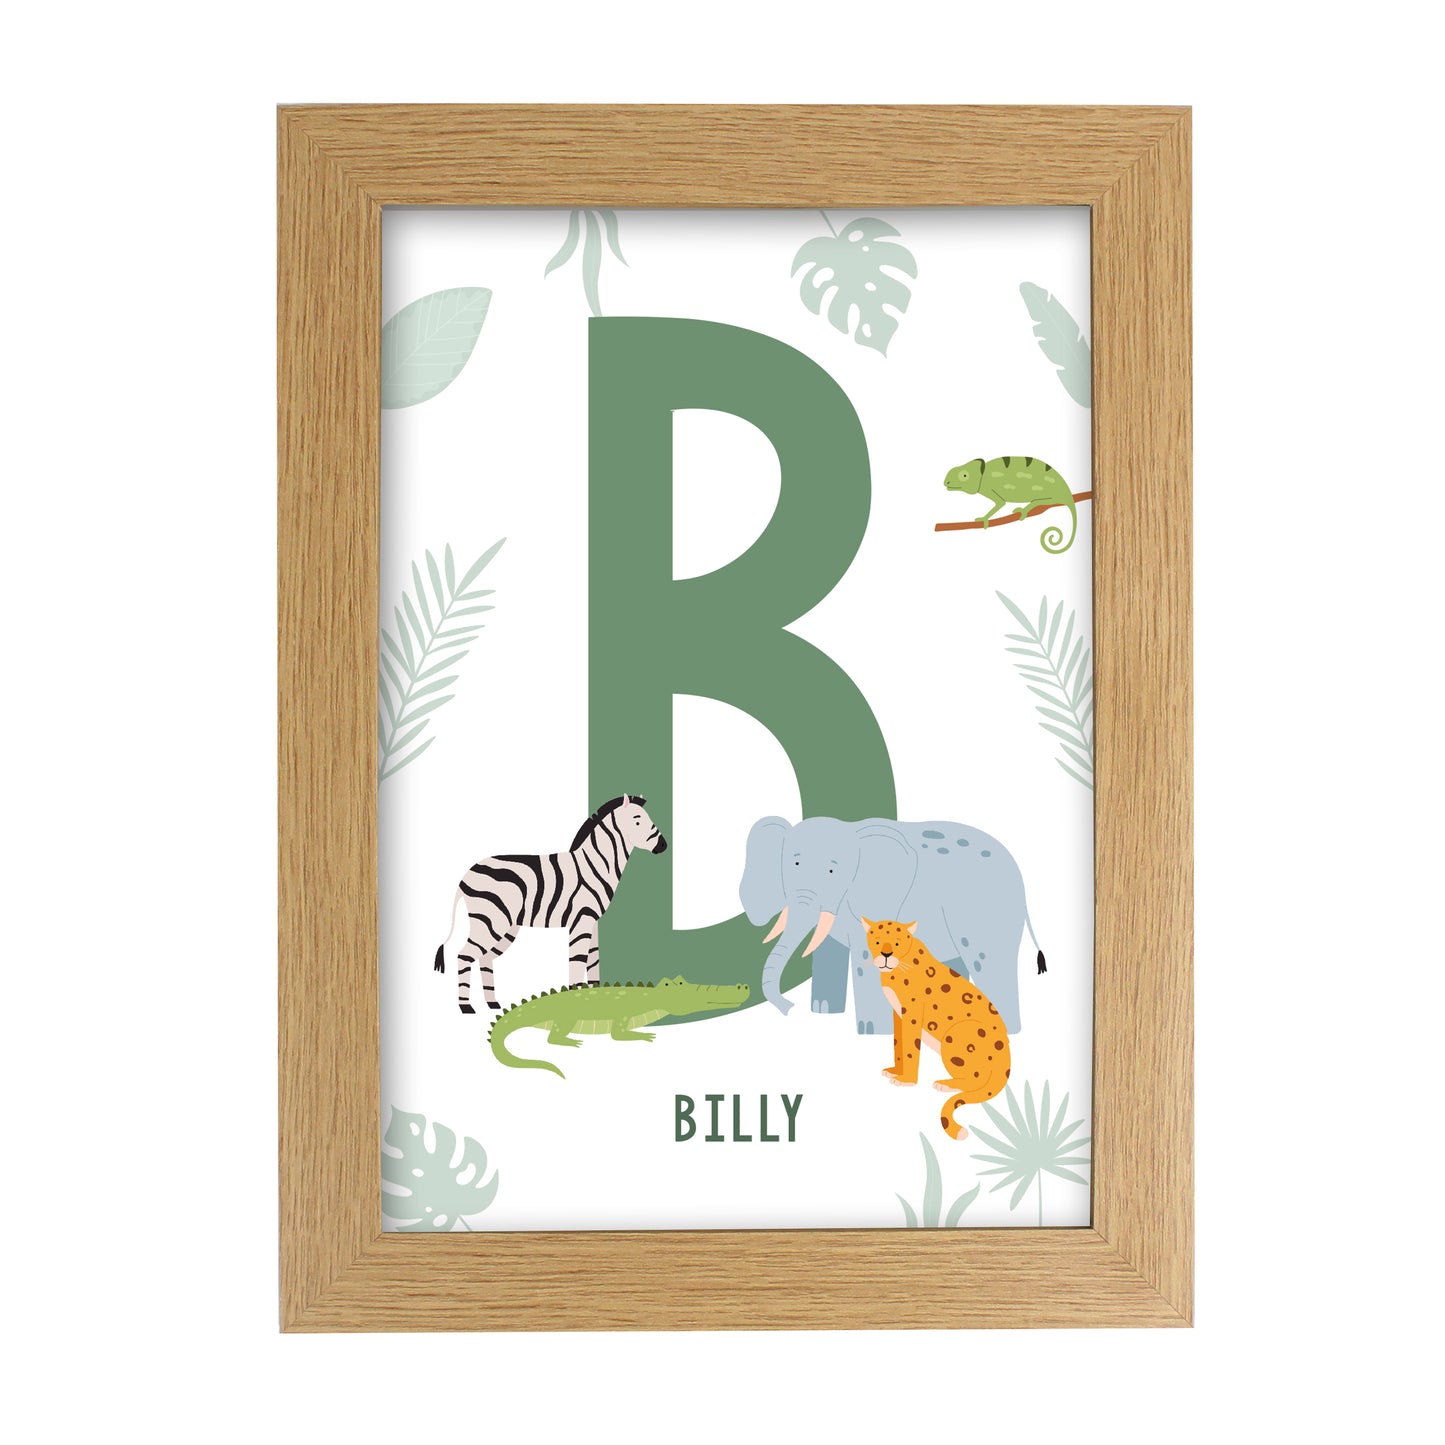 Personalised Safari Animals Initial A4 Oak Framed Print